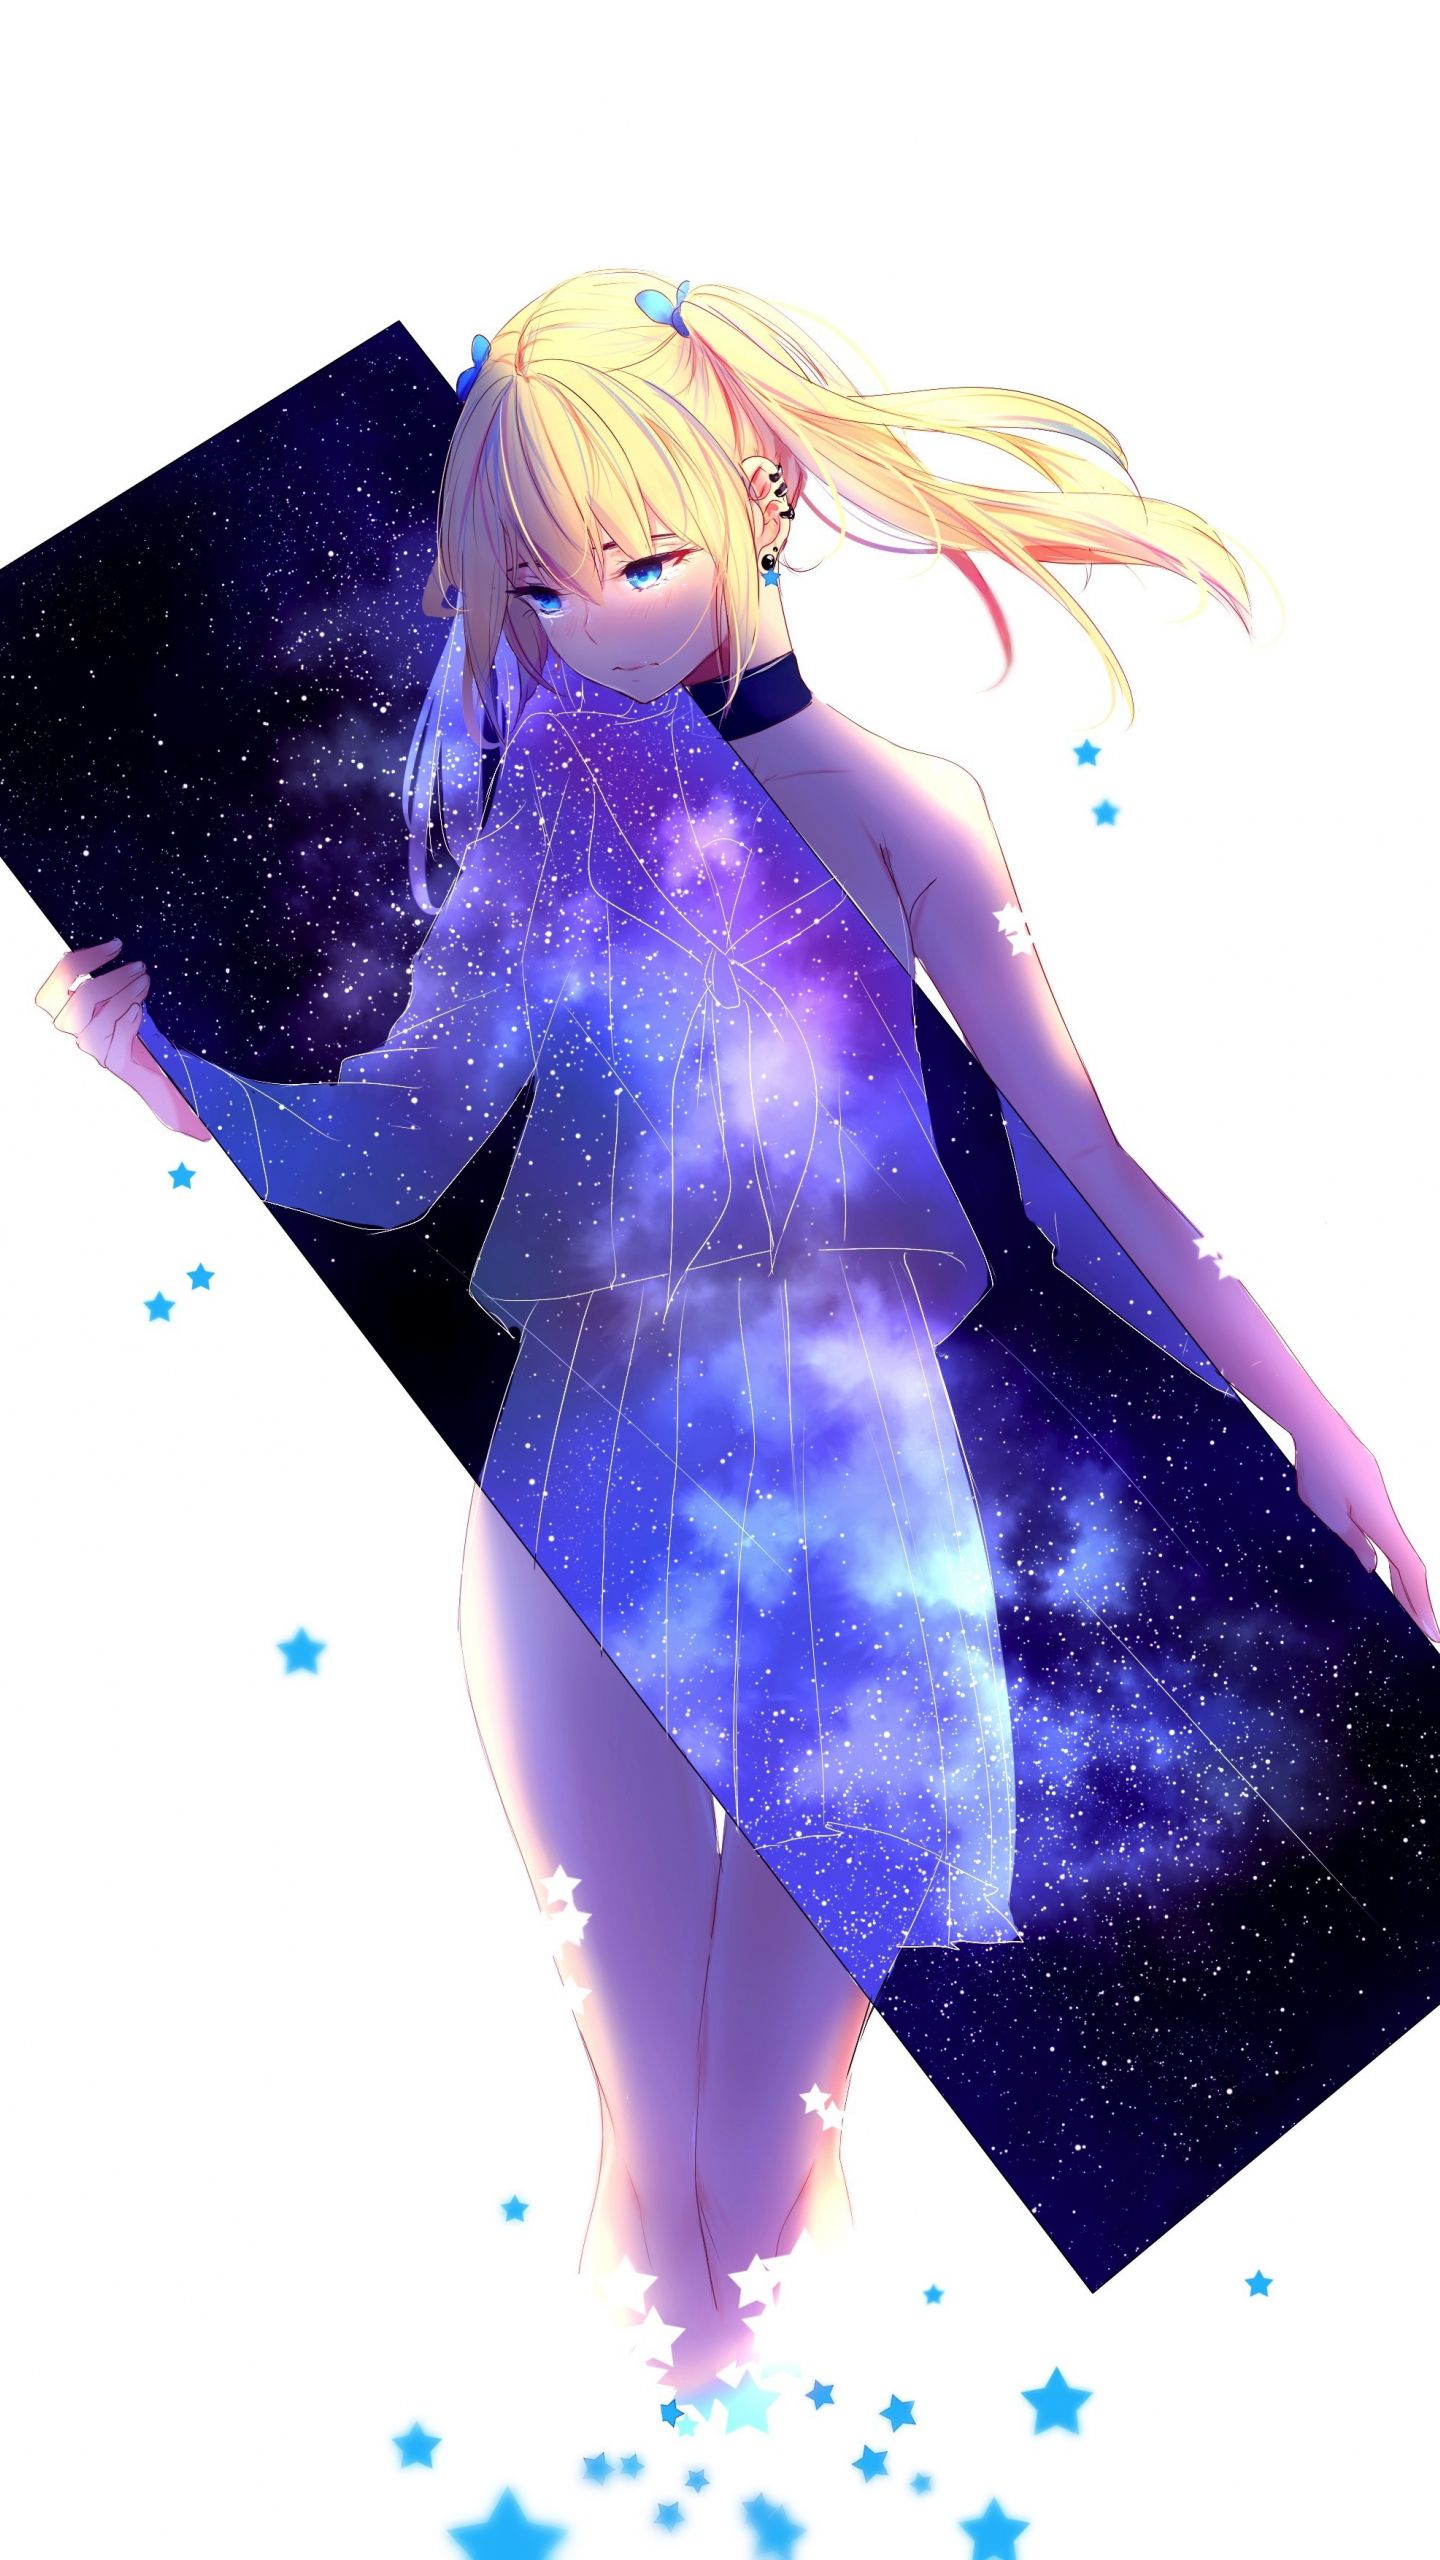 Nếu bạn yêu thích anime và thiên niên kỷ, bạn sẽ không muốn bỏ lỡ hình ảnh cô gái anime trong vũ trụ. Bức tranh này là một sự kết hợp hoàn hảo giữa màu sắc vô tận của vũ trụ và sự dịu dàng của nhân vật. Hãy thưởng thức và thám hiểm các tinh vân và hành tinh trong vũ trụ qua bức tranh này.